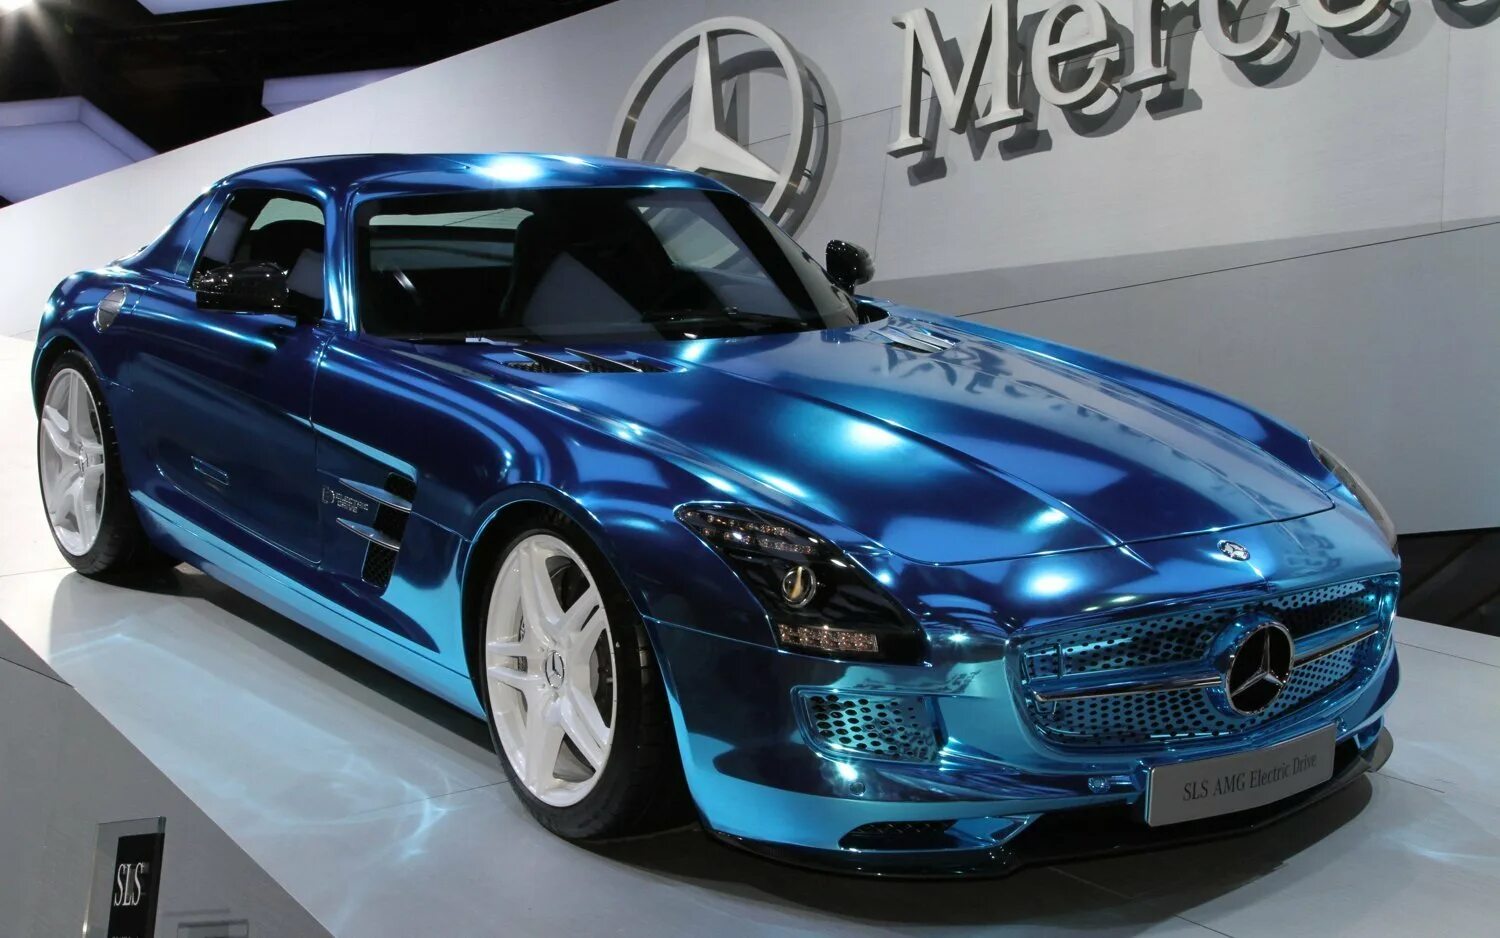 Цена самого дорогого мерседеса. Mercedes-Benz SLS AMG голубой. Mercedes-Benz AMG самый дорогой. Mercedes Benz SLS AMG Roadster Tuning. Самые дорогие машины Мерседес АМГ.